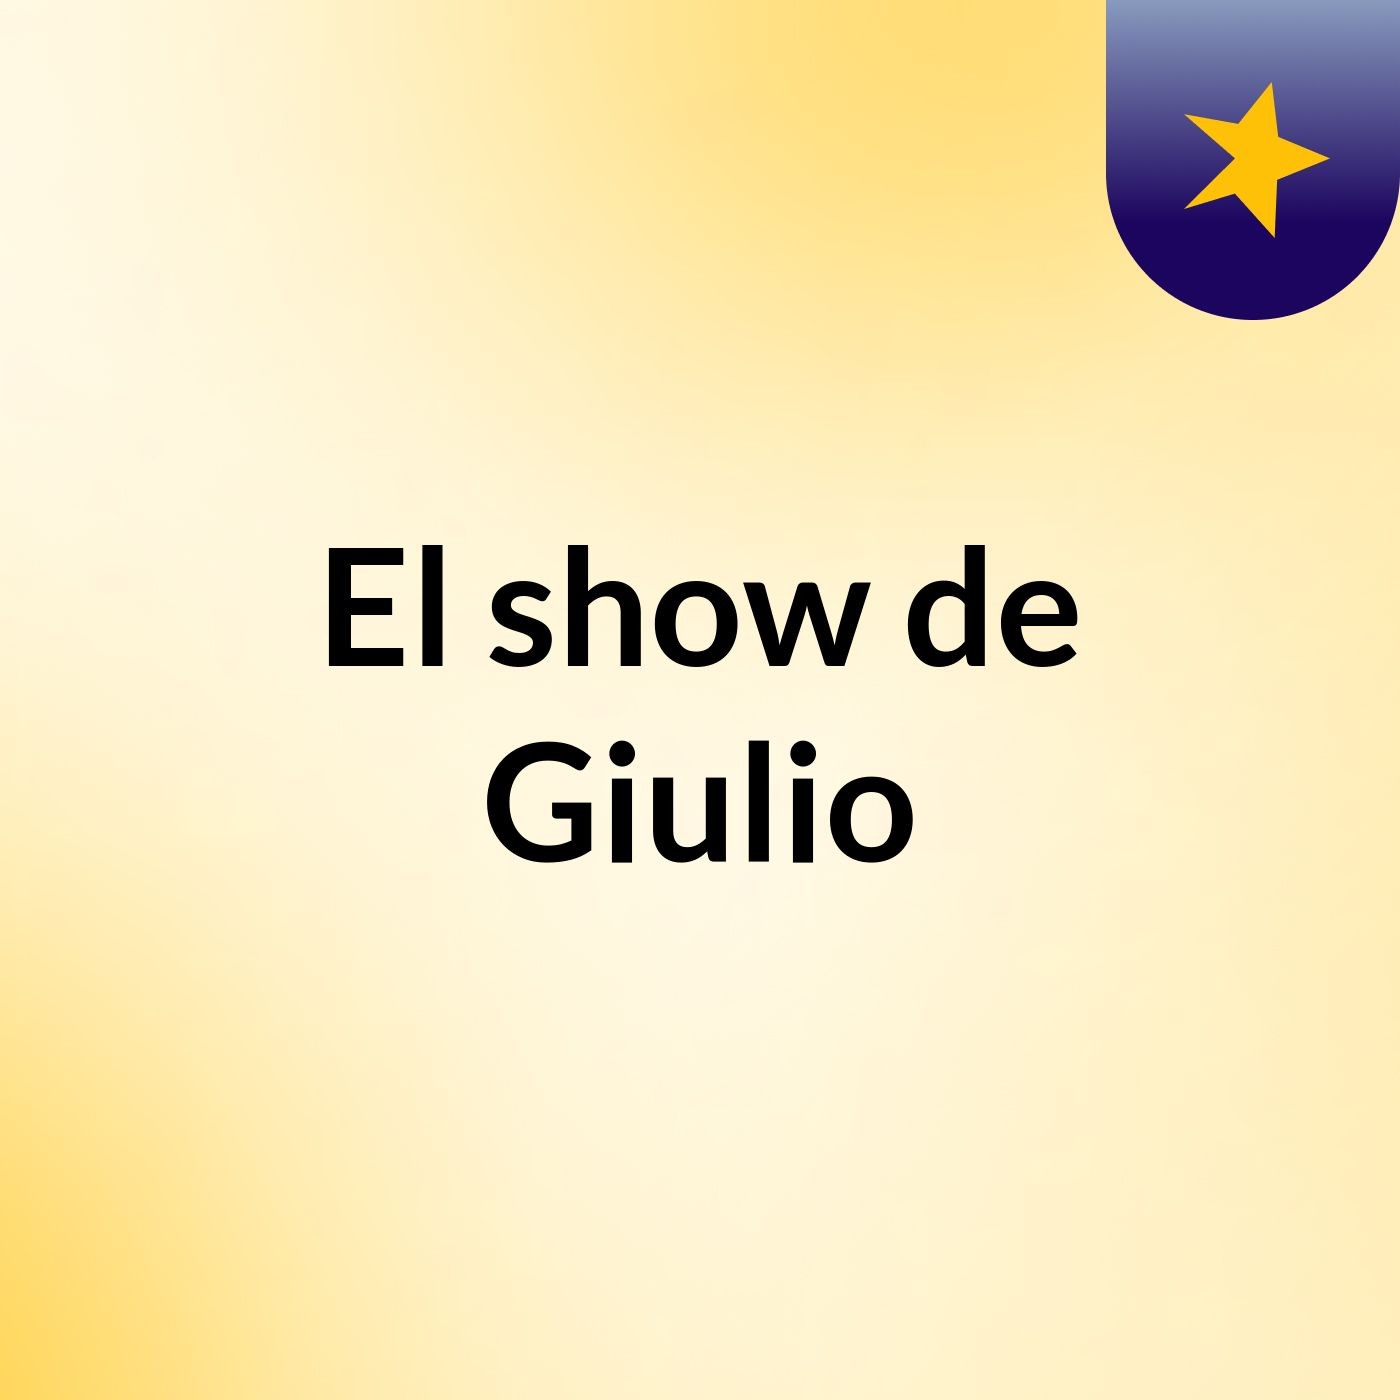 El show de Giulio